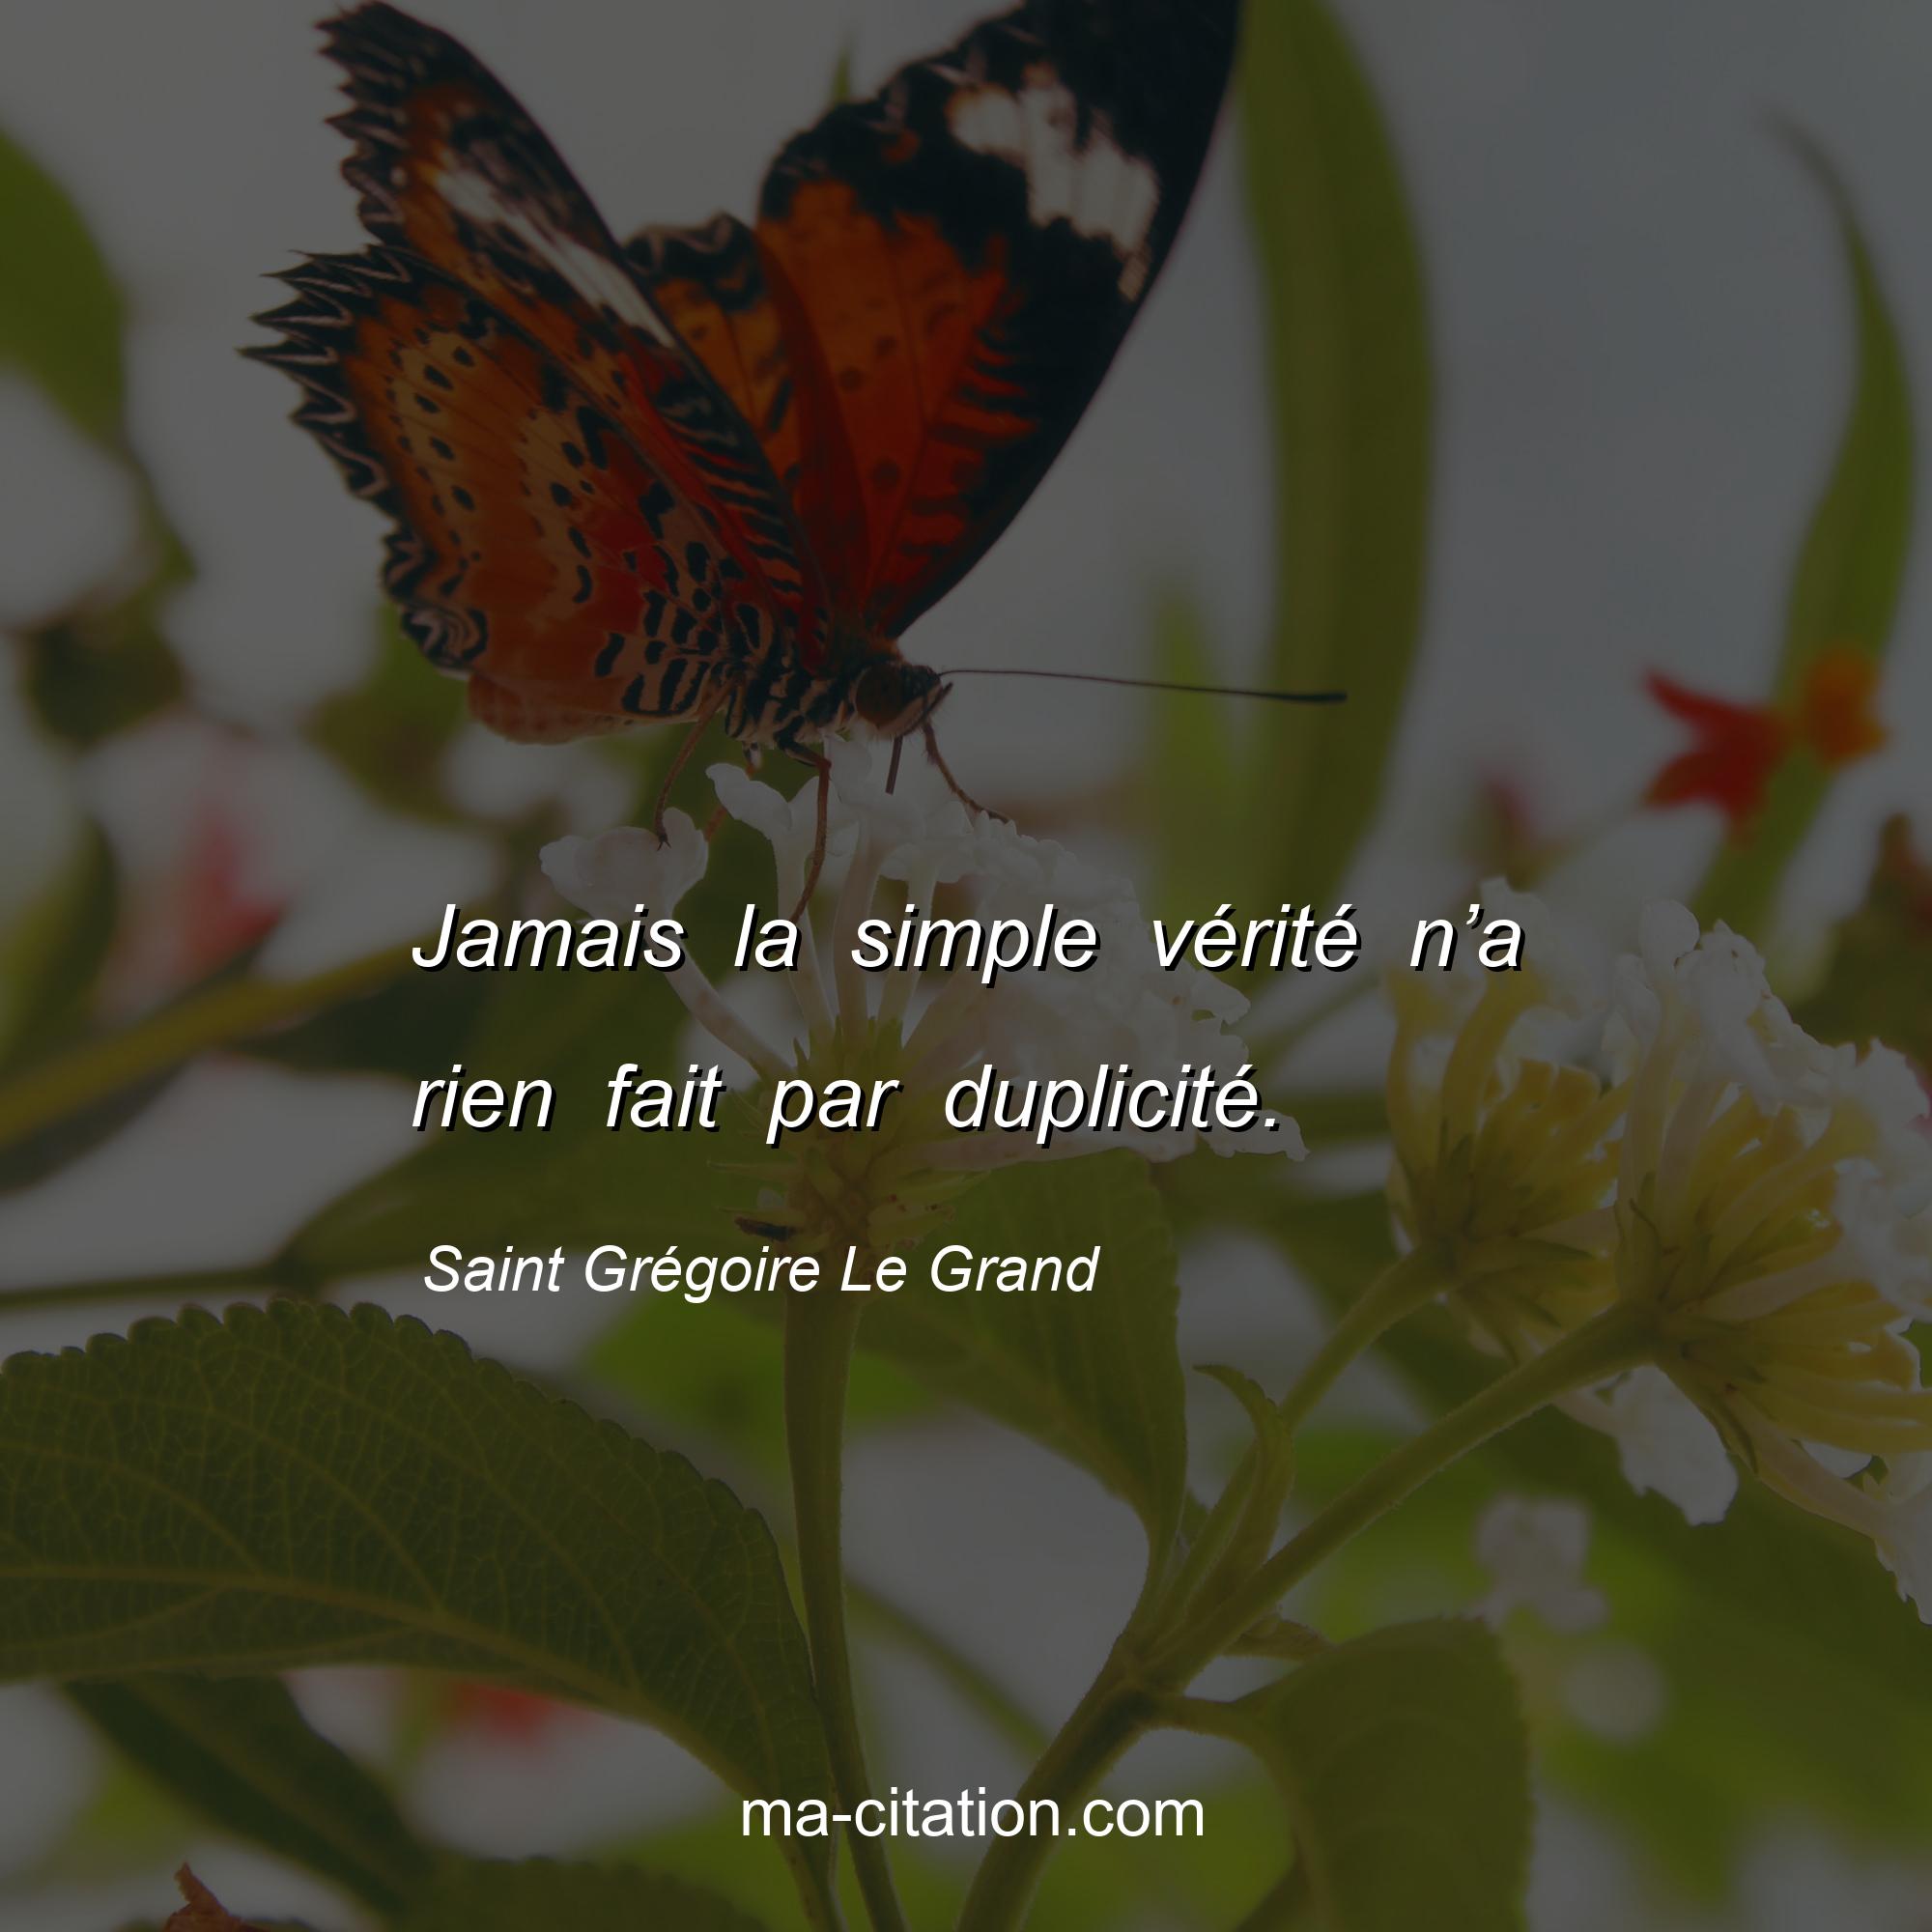 Saint Grégoire Le Grand : Jamais la simple vérité n’a rien fait par duplicité.